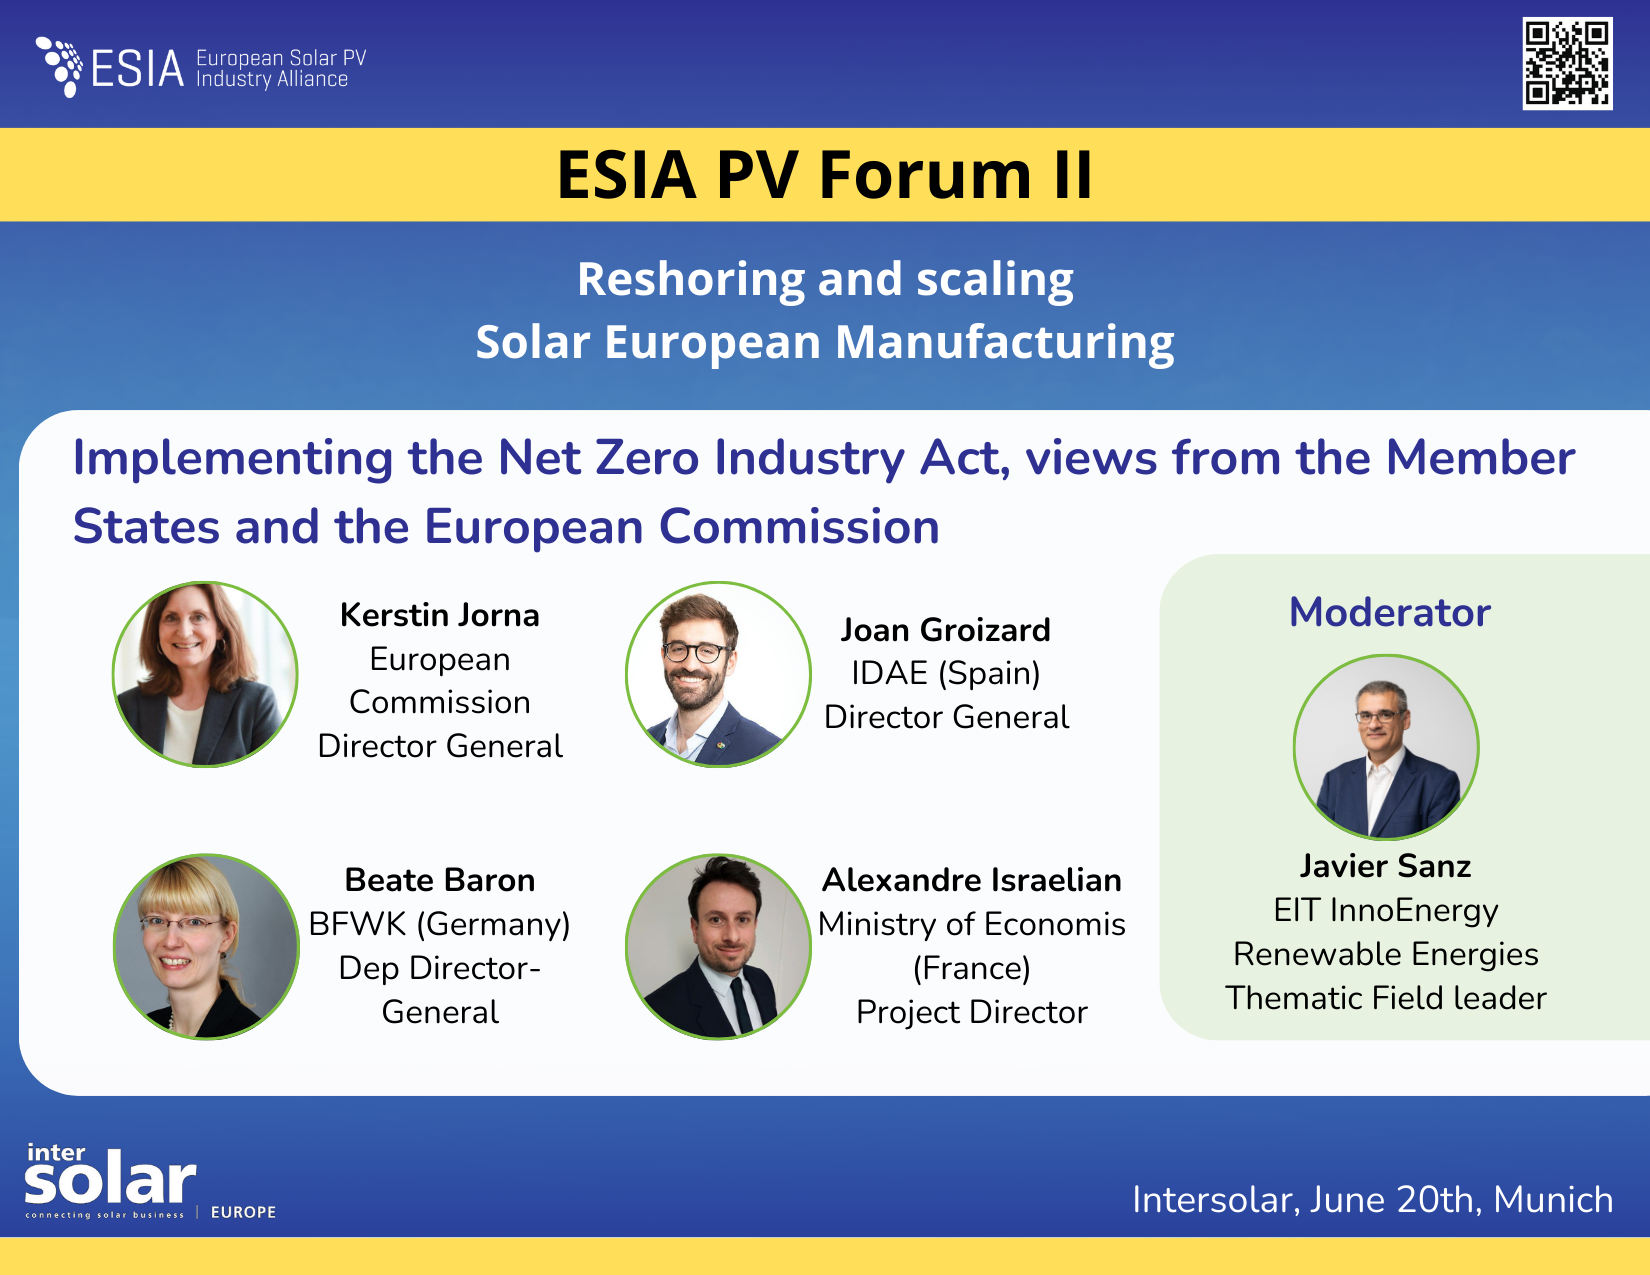 ESIA PV Forum II: Relocalización y ampliación de la fabricación solar europea